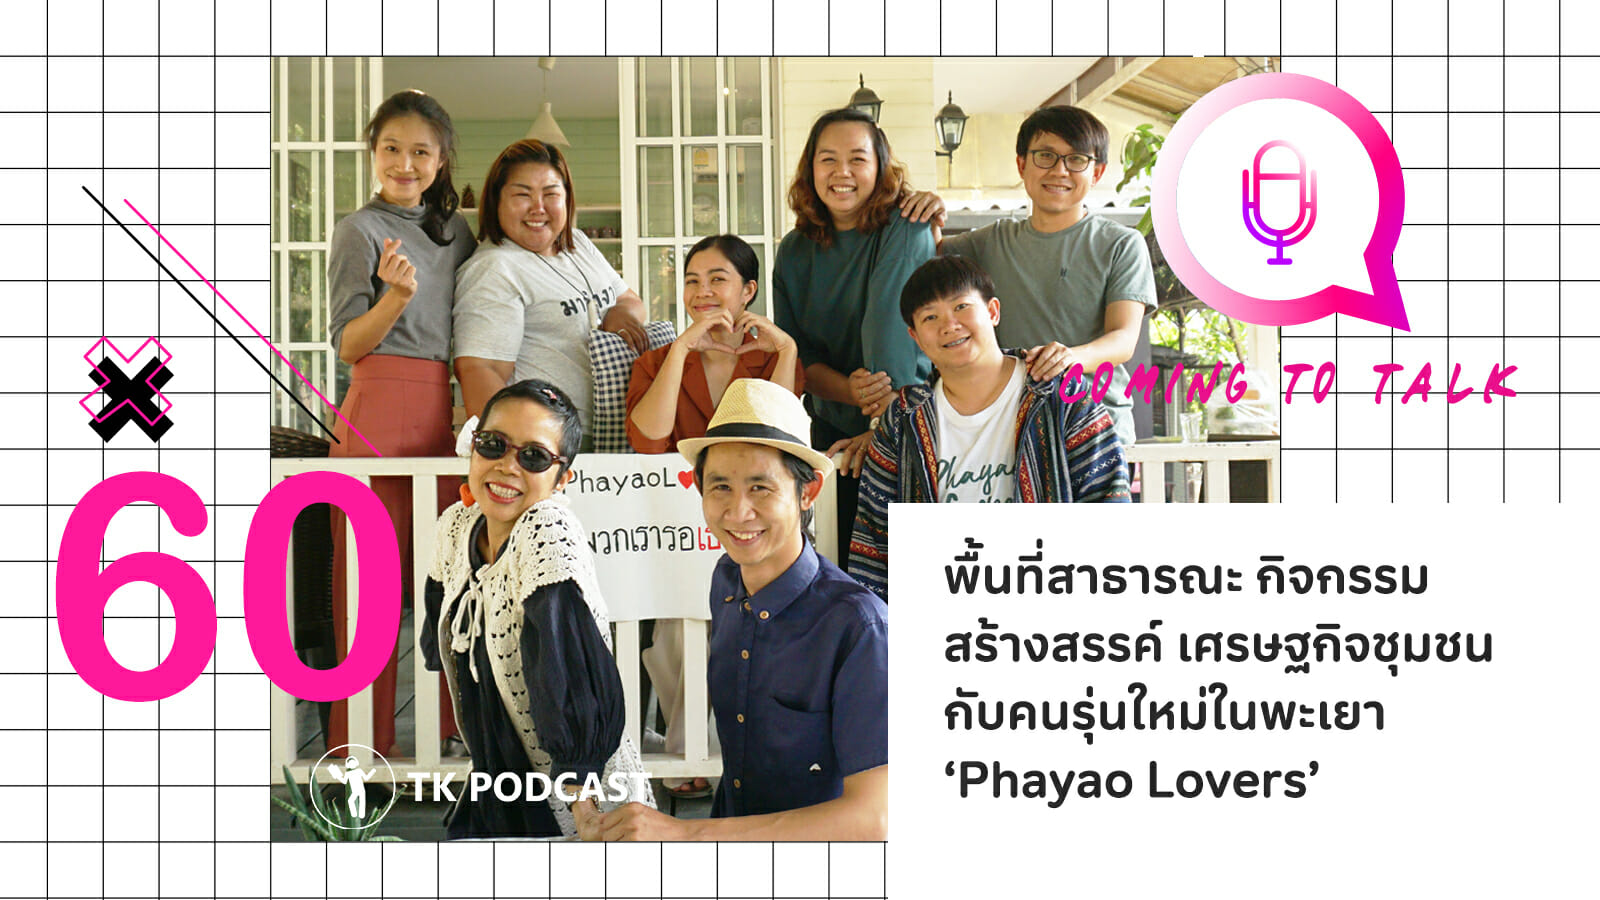 พื้นที่สาธารณะ กิจกรรมสร้างสรรค์ เศรษฐกิจชุมชน กับคนรุ่นใหม่ในพะเยา ‘Phayao Lovers’